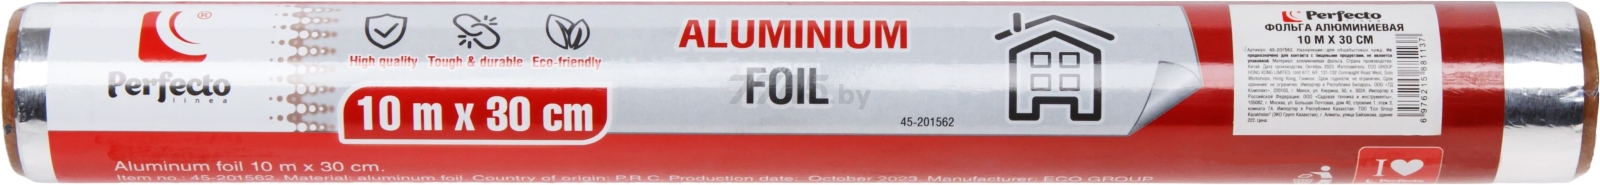 Фольга бытовая алюминиевая PERFECTO LINEA 10 м х 30 см (45-201562) - Фото 2